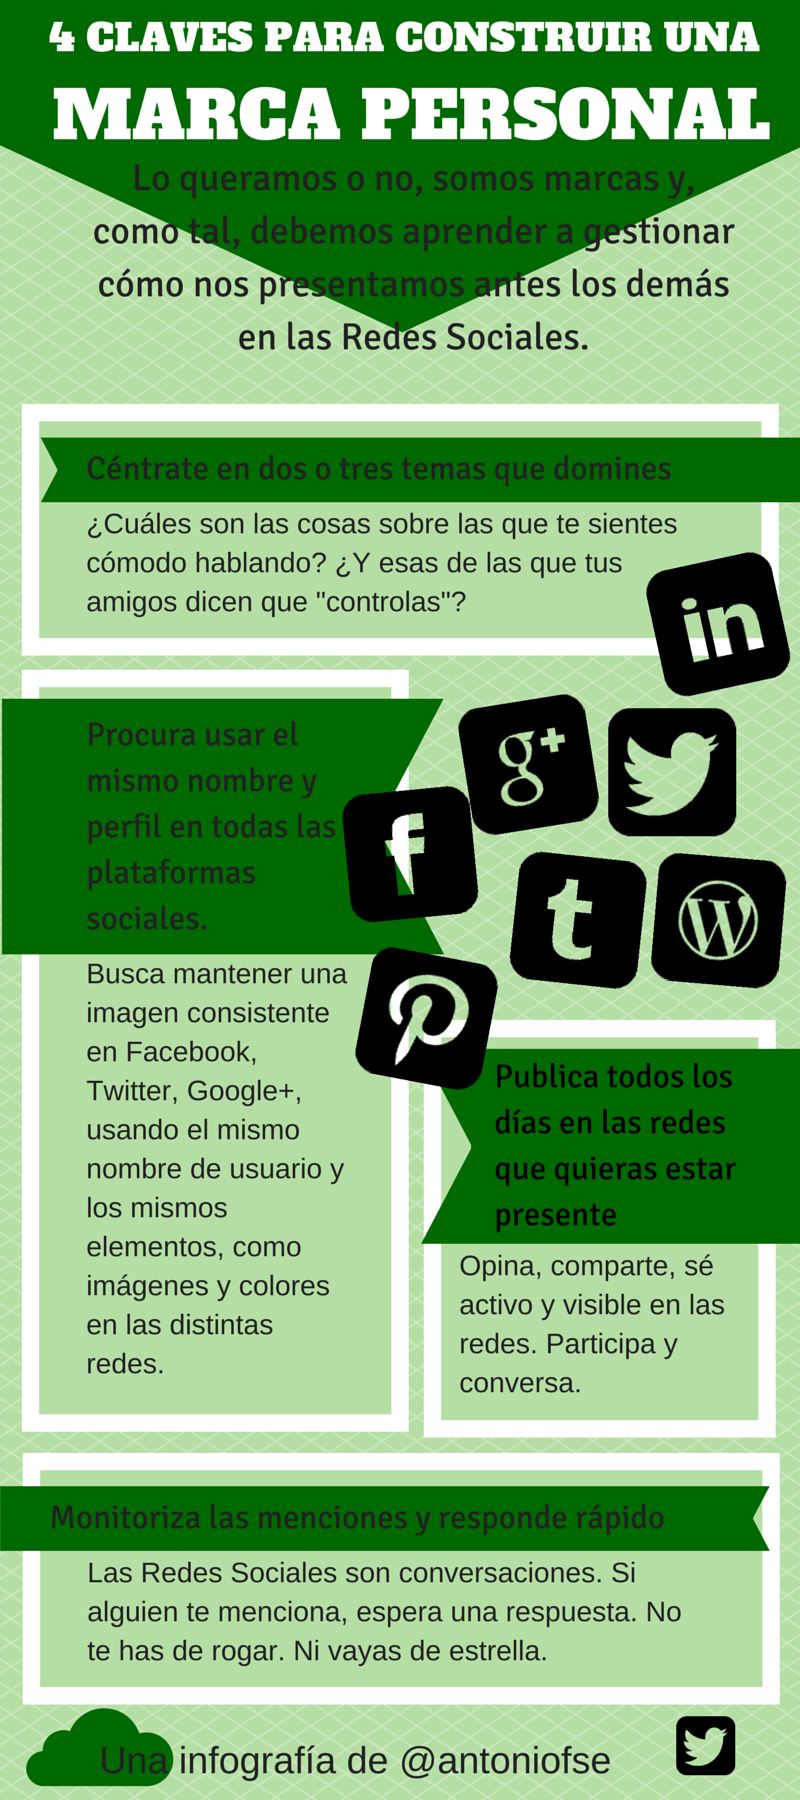 Infografías - Social Media y Community Management 4